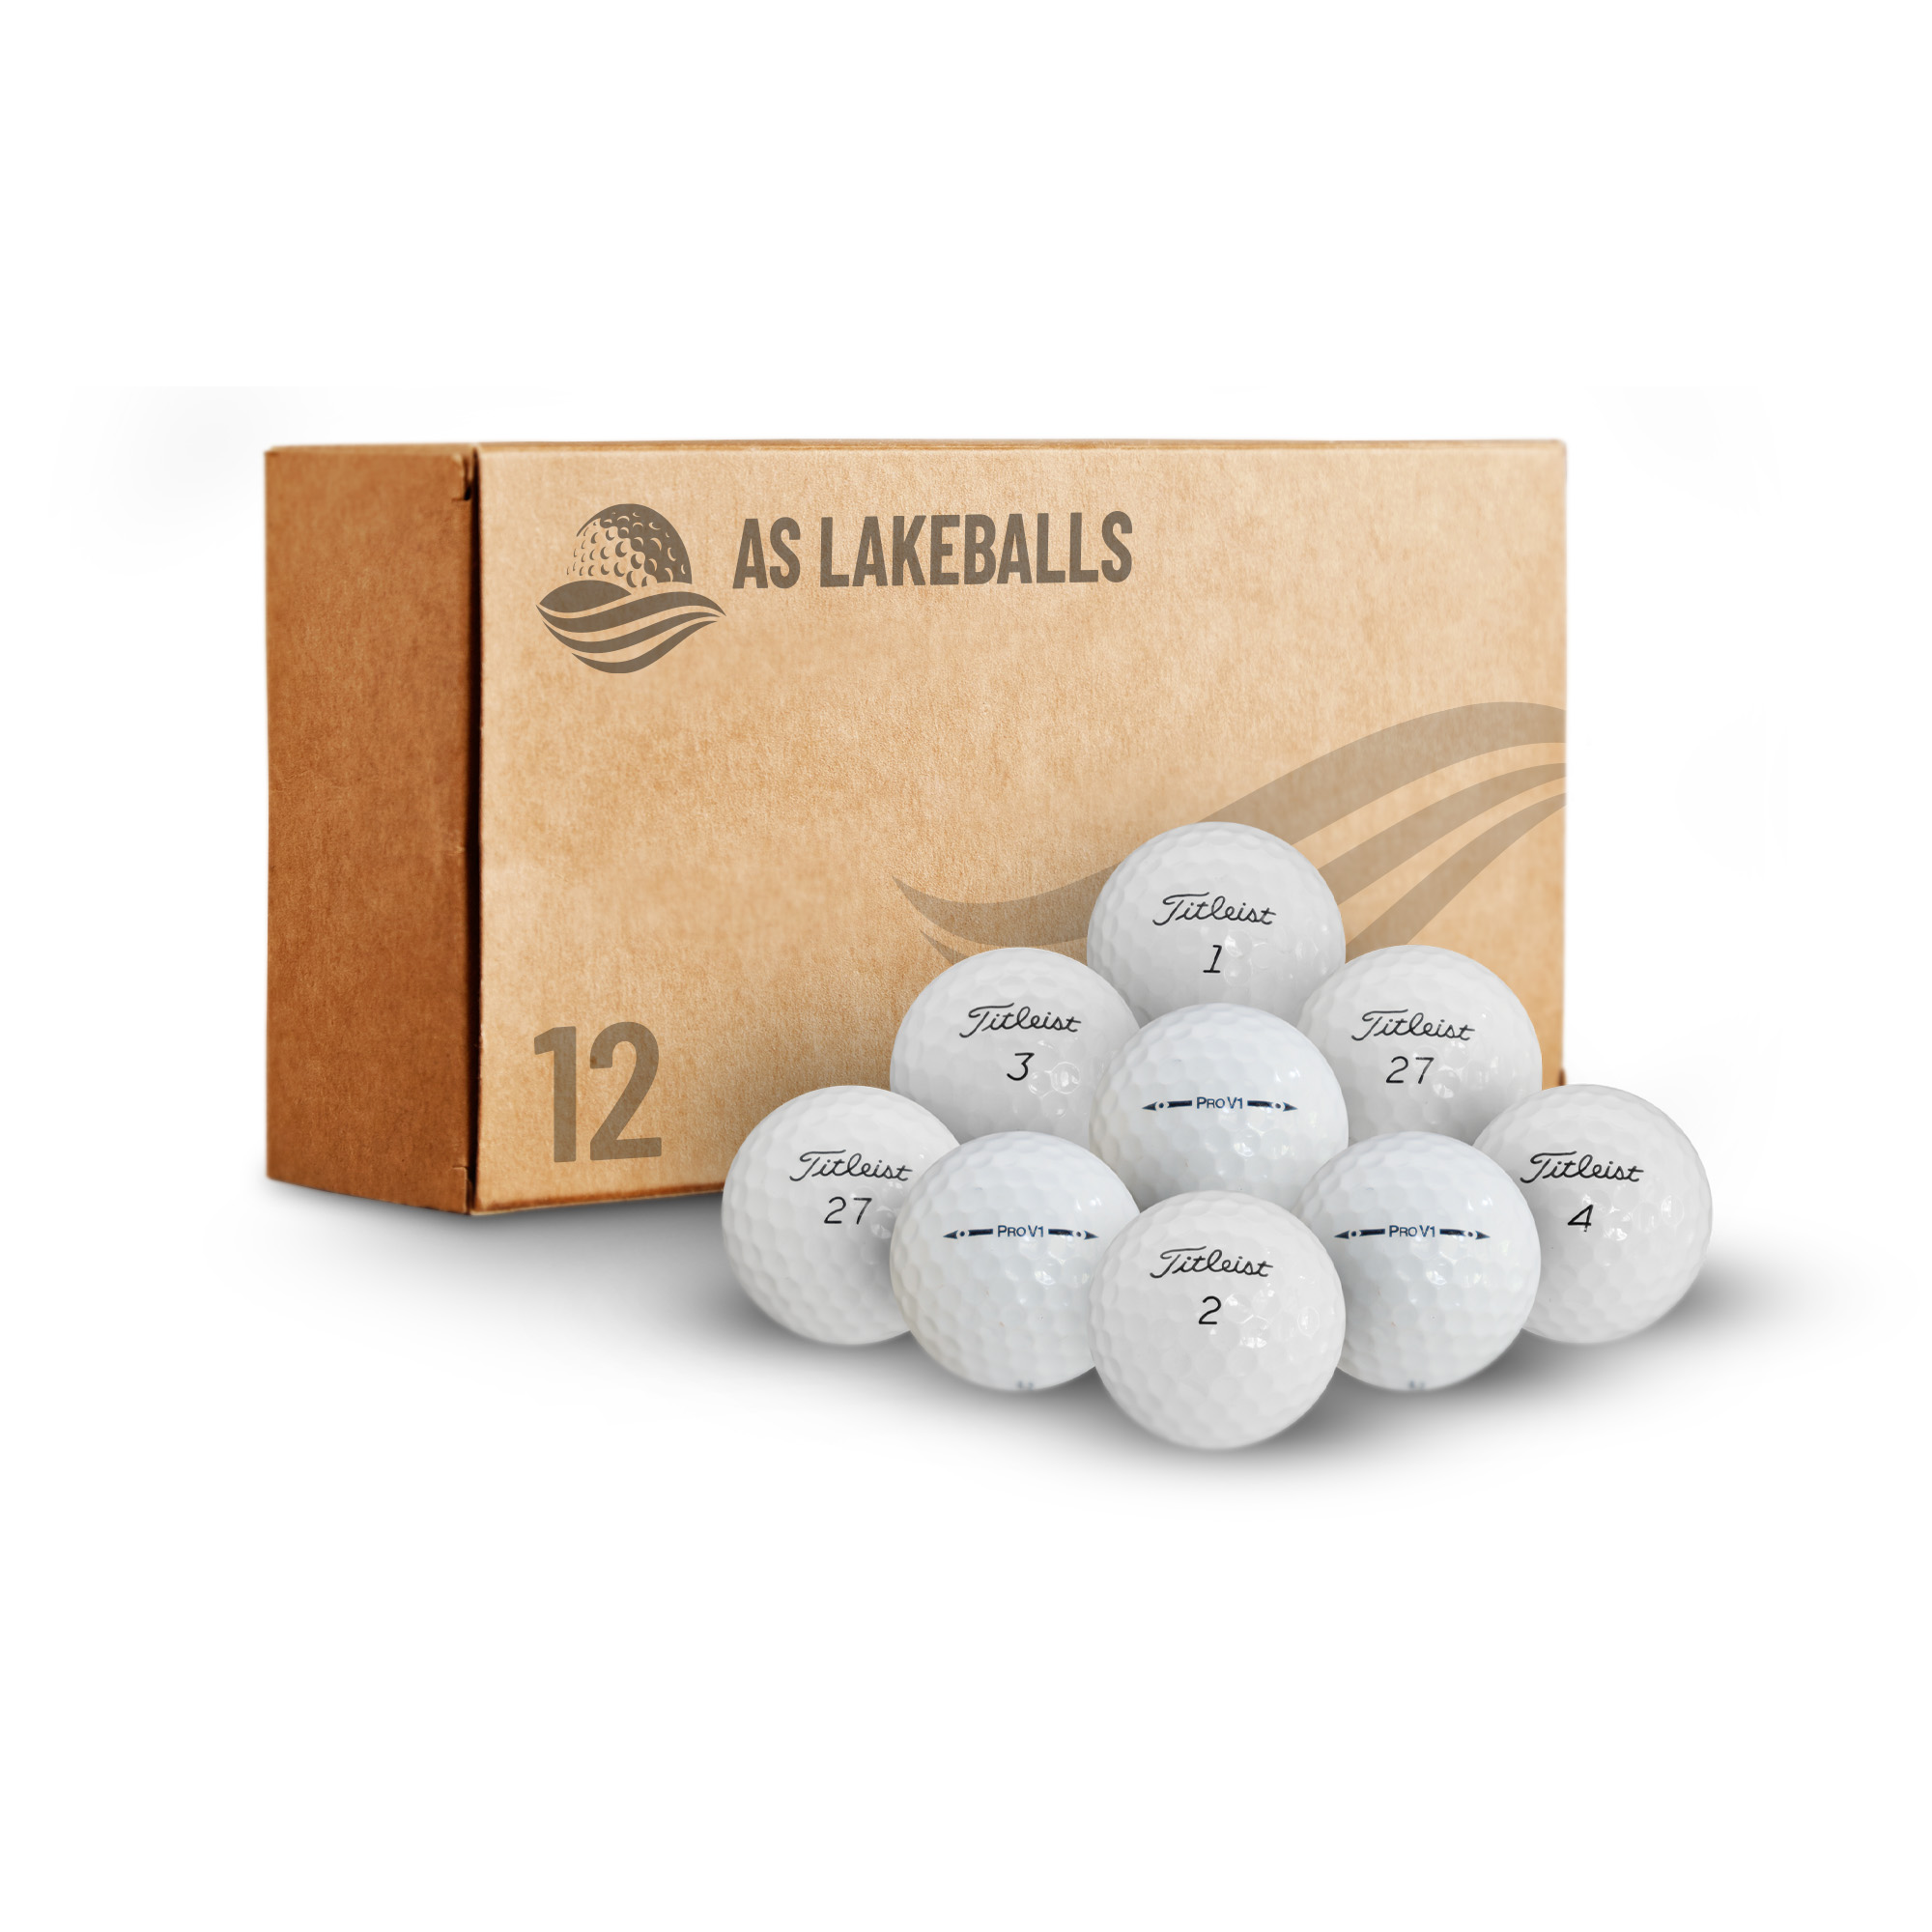 12 Stück Titleist Pro V1 AA Lakeballs bei AS Lakeballs günstig kaufen